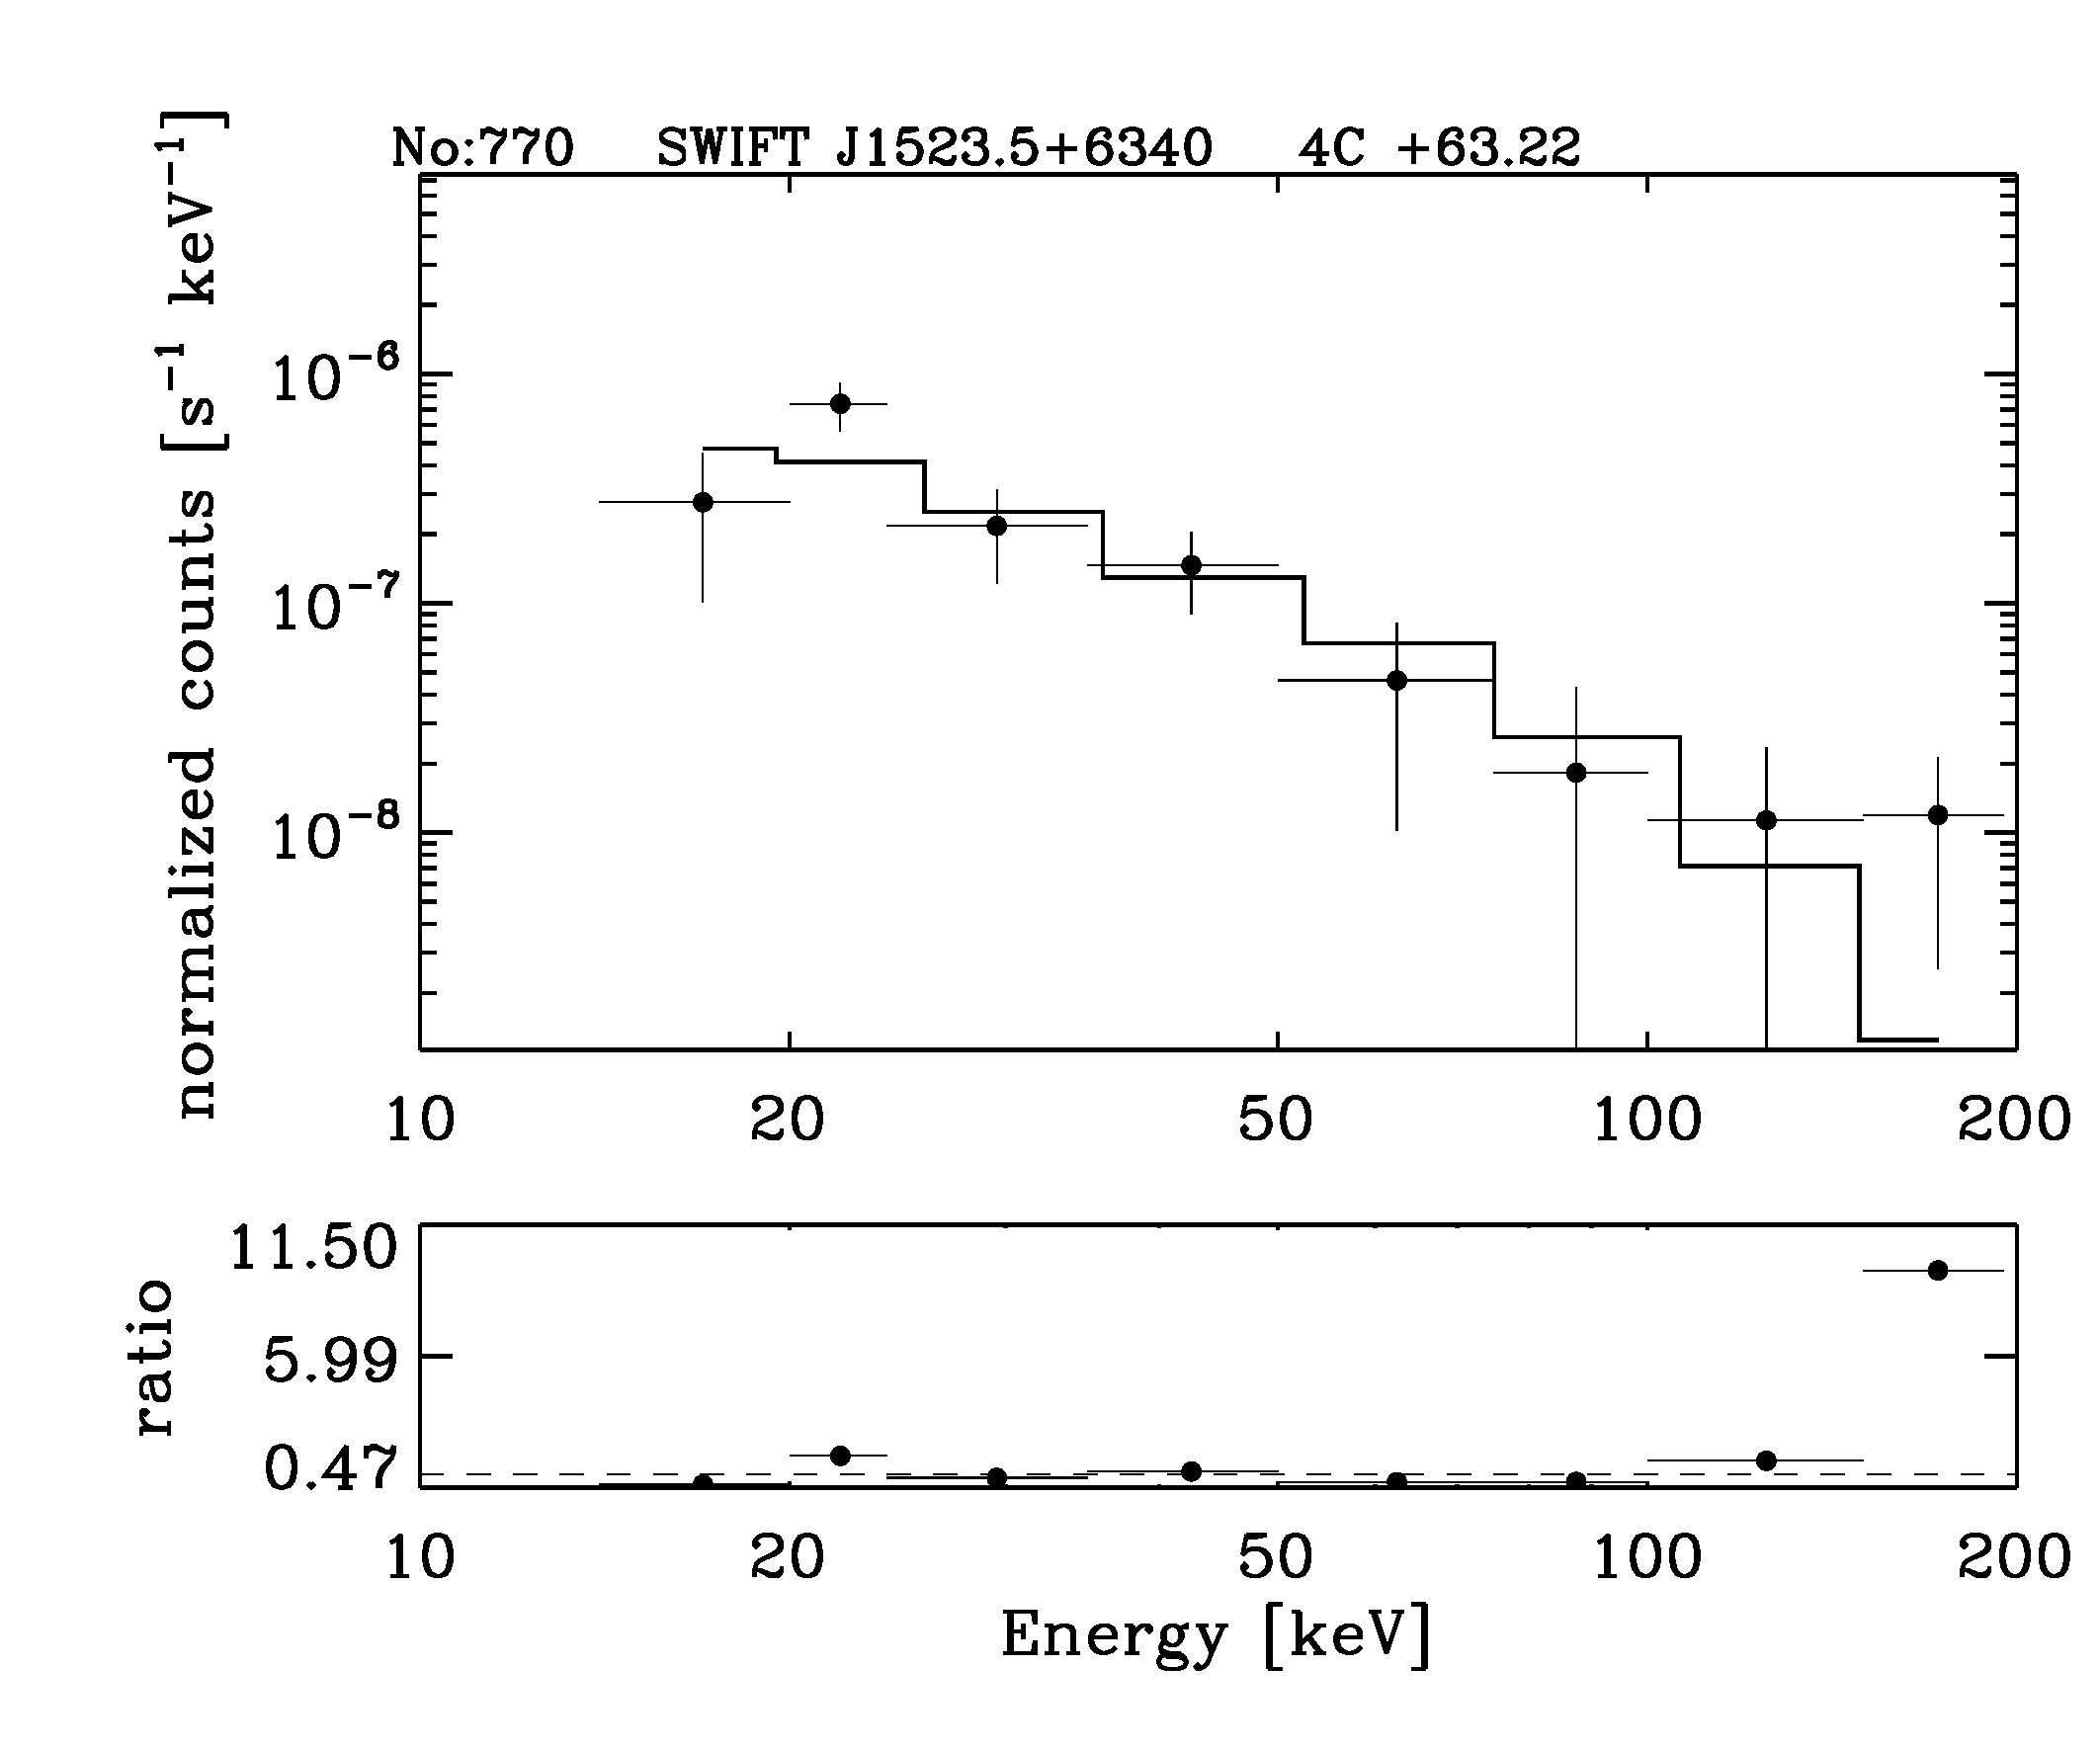 BAT Spectrum for SWIFT J1523.5+6340